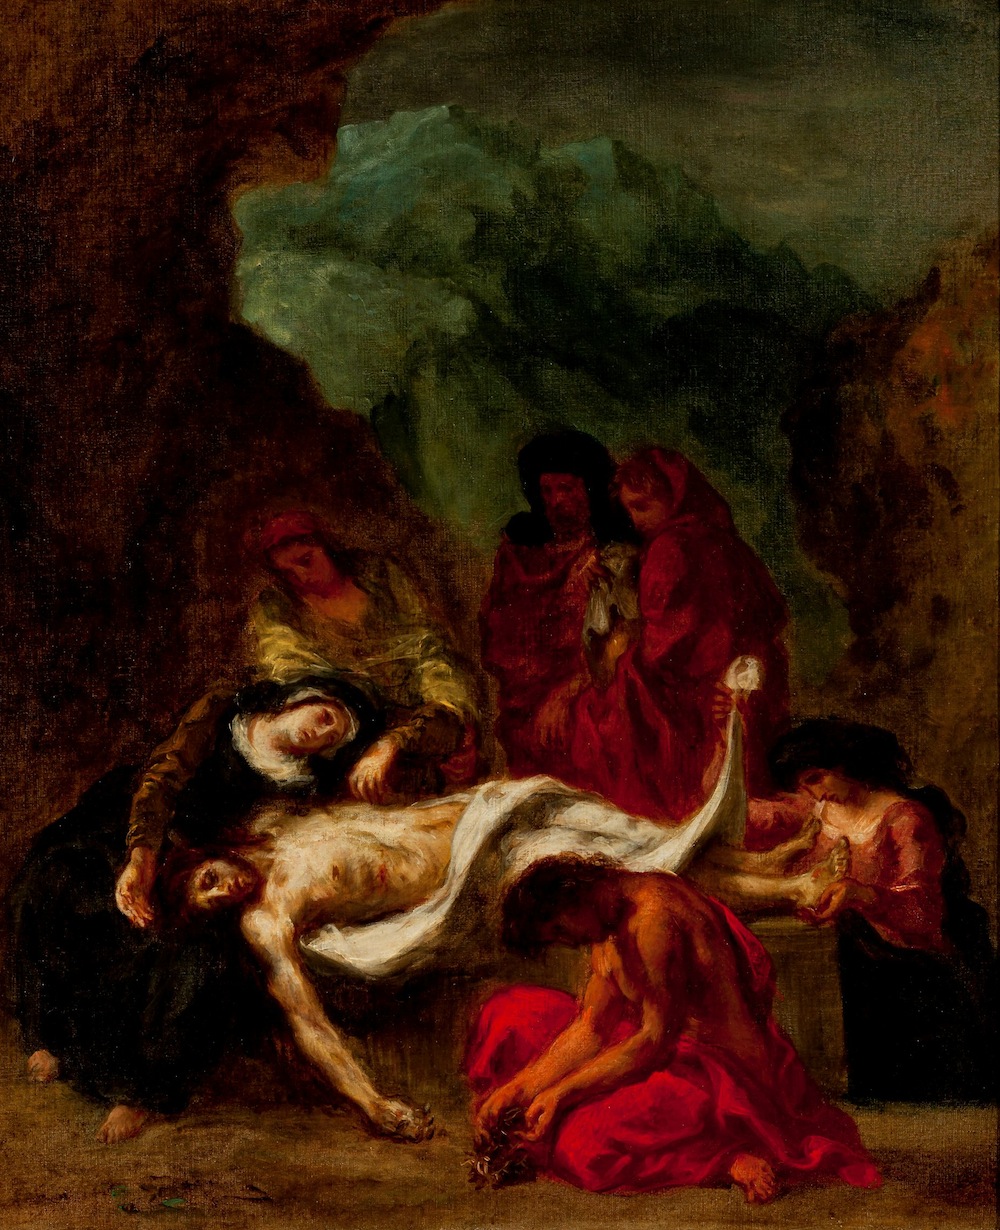 Eugene+Delacroix-1798-1863 (251).jpg